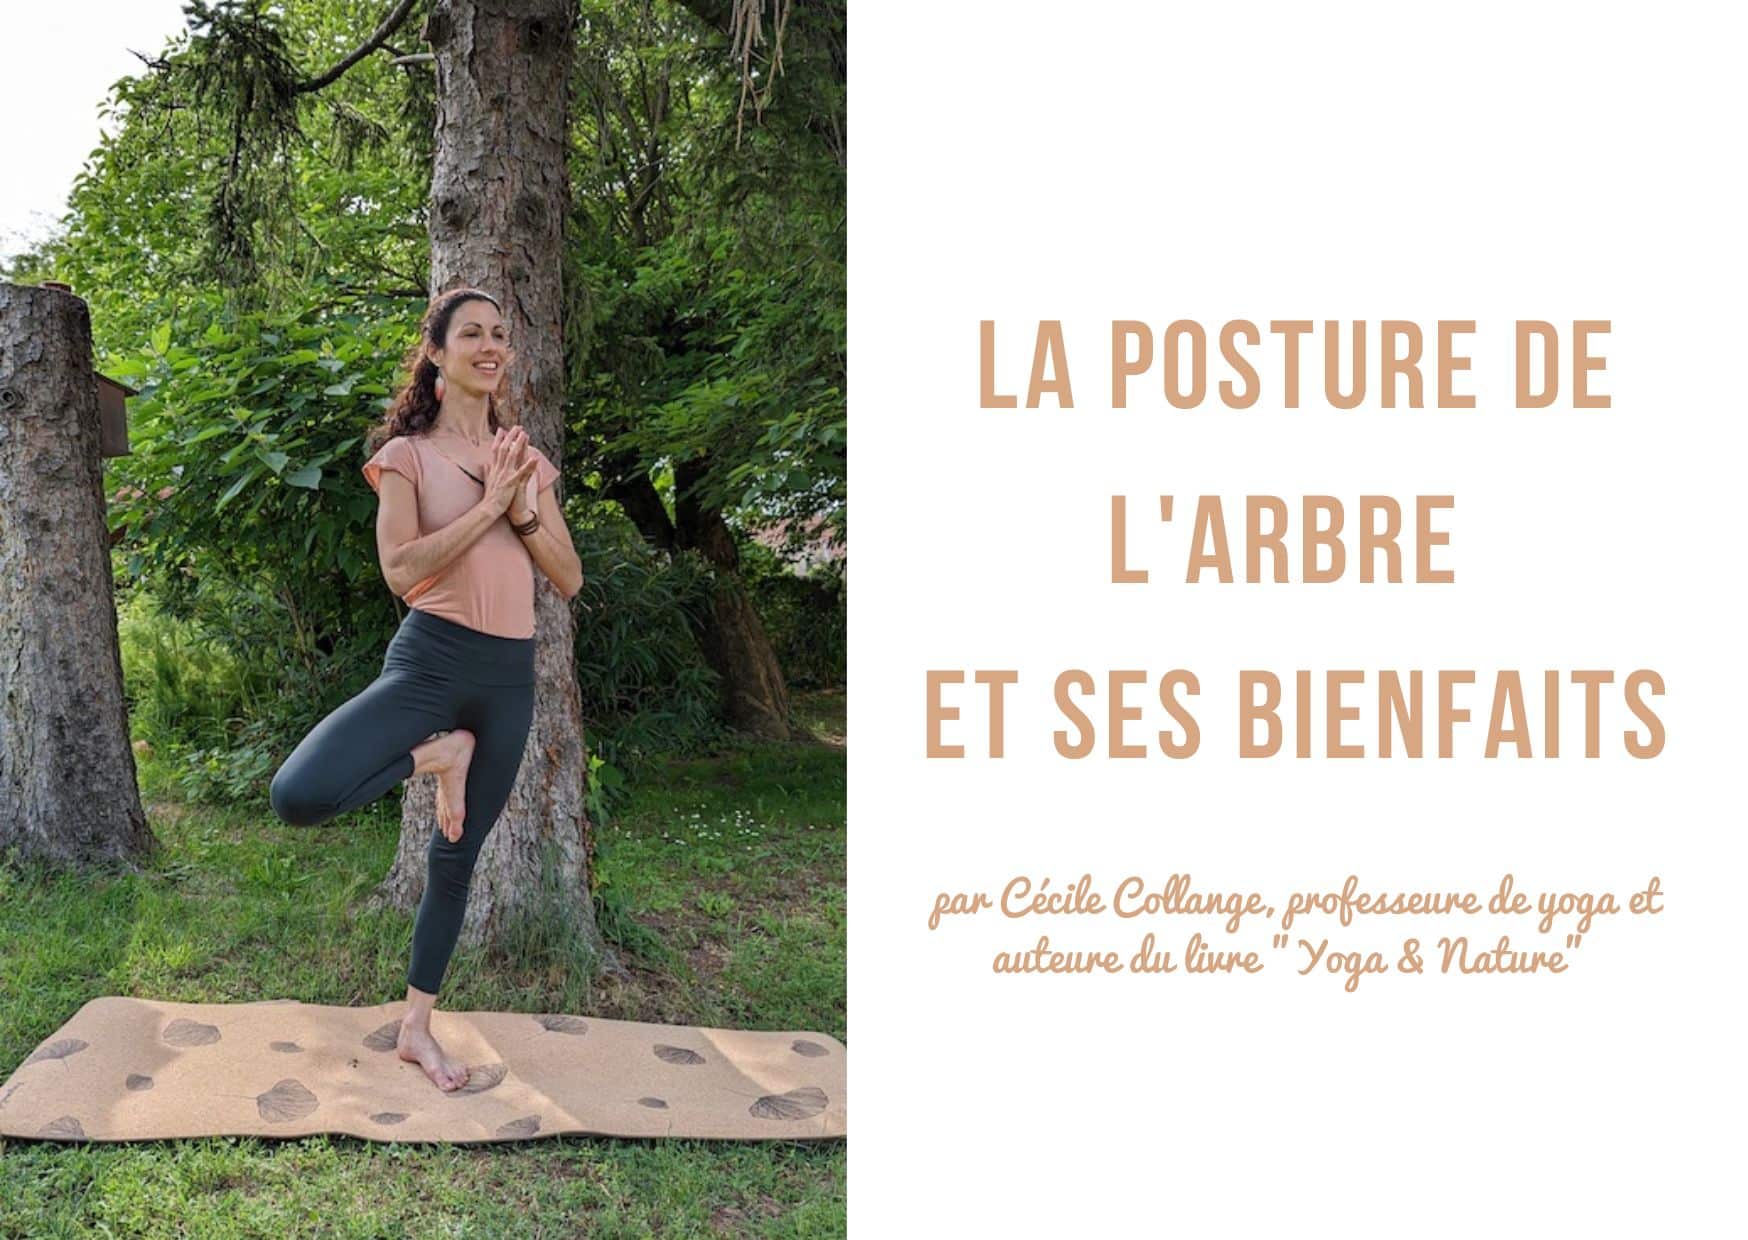 La posture de l'arbre est une posture de yoga accessible à pratiquer et aux nombreux bienfaits !